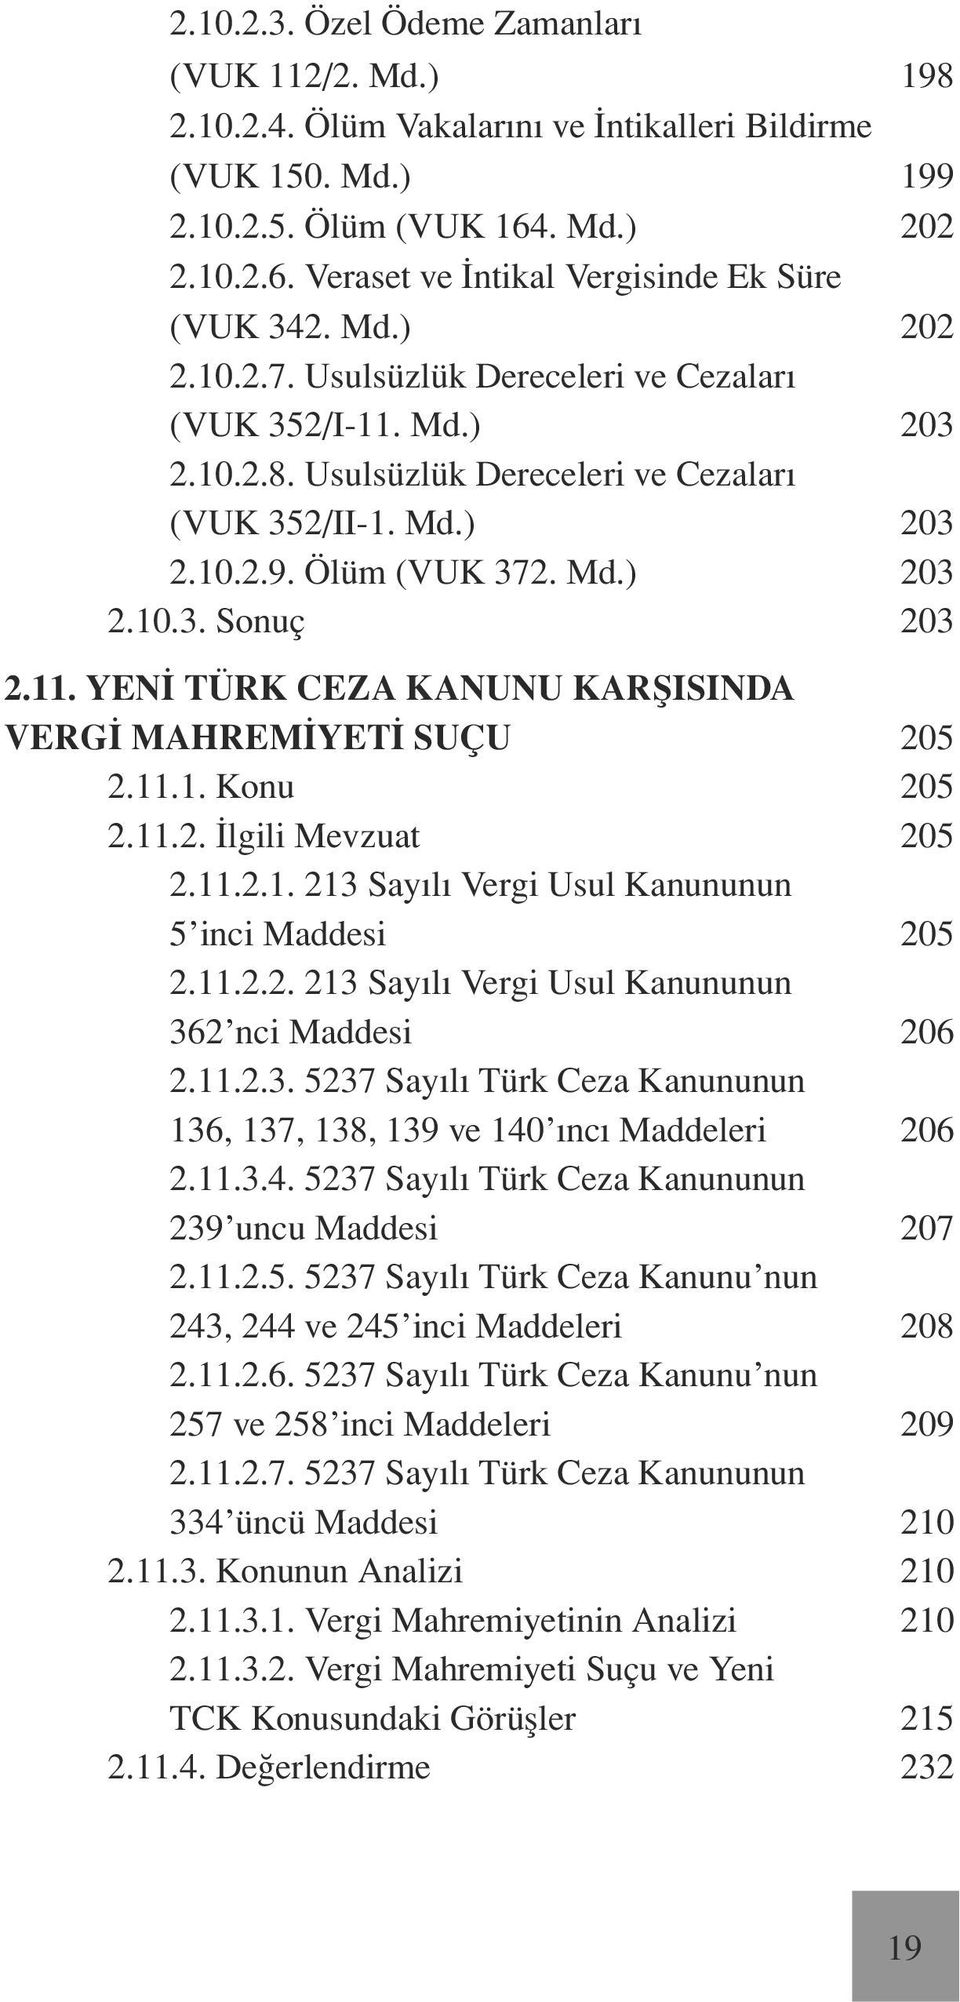 11. Yeni Türk Ceza Kanunu Karşısında Vergi Mahremiyeti Suçu 205 2.11.1. Konu 205 2.11.2. İlgili Mevzuat 205 2.11.2.1. 213 Sayılı Vergi Usul Kanununun 5 inci Maddesi 205 2.11.2.2. 213 Sayılı Vergi Usul Kanununun 362 nci Maddesi 206 2.